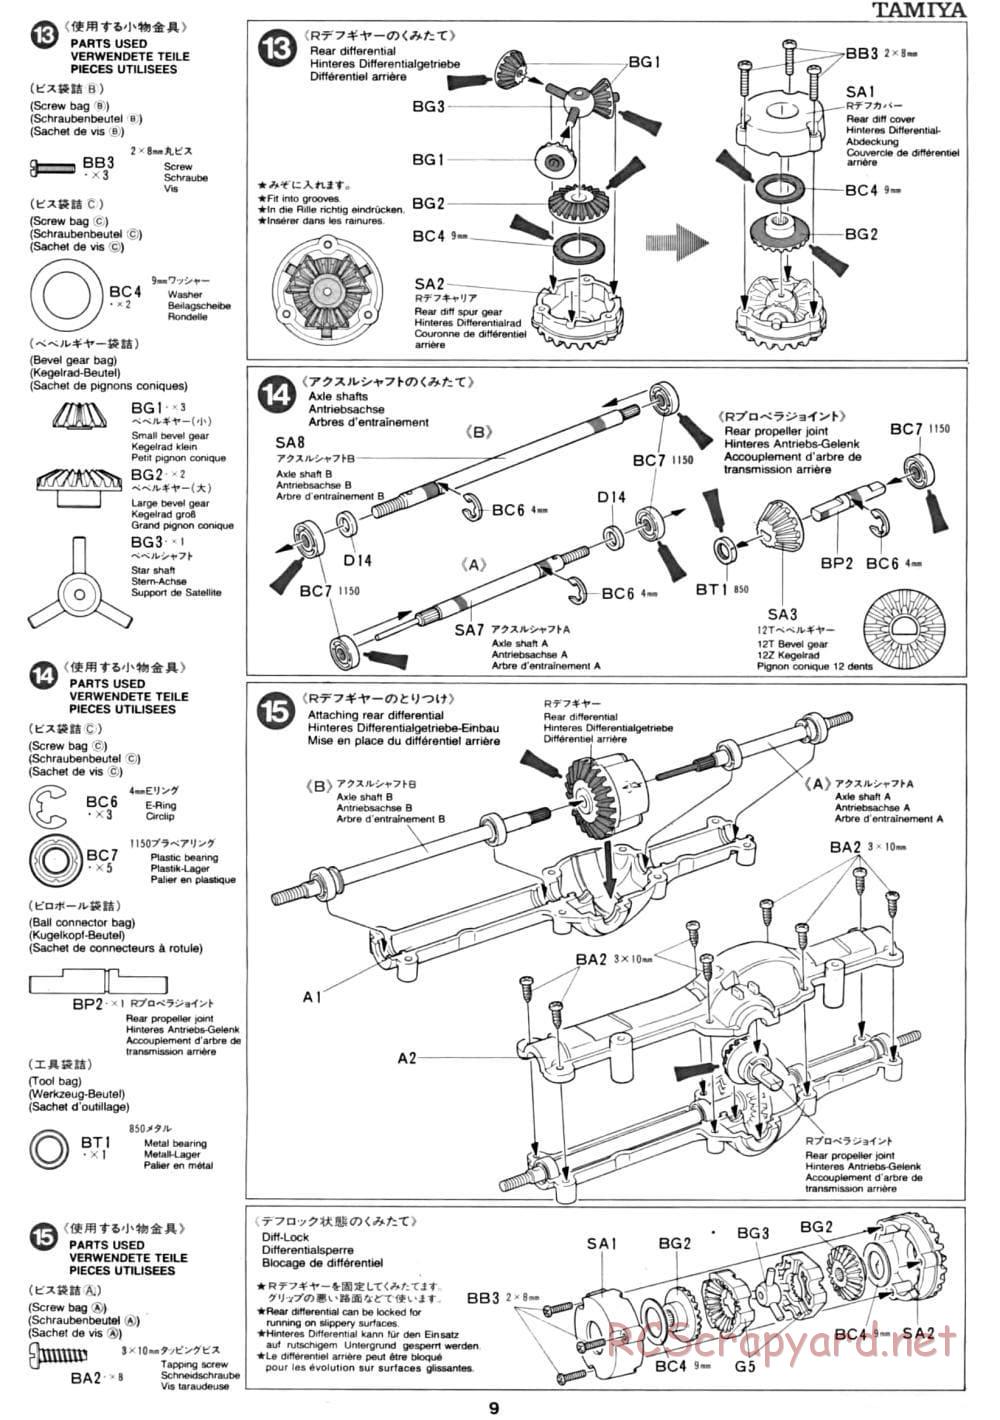 Tamiya - CC-01 Chassis - Manual - Page 9